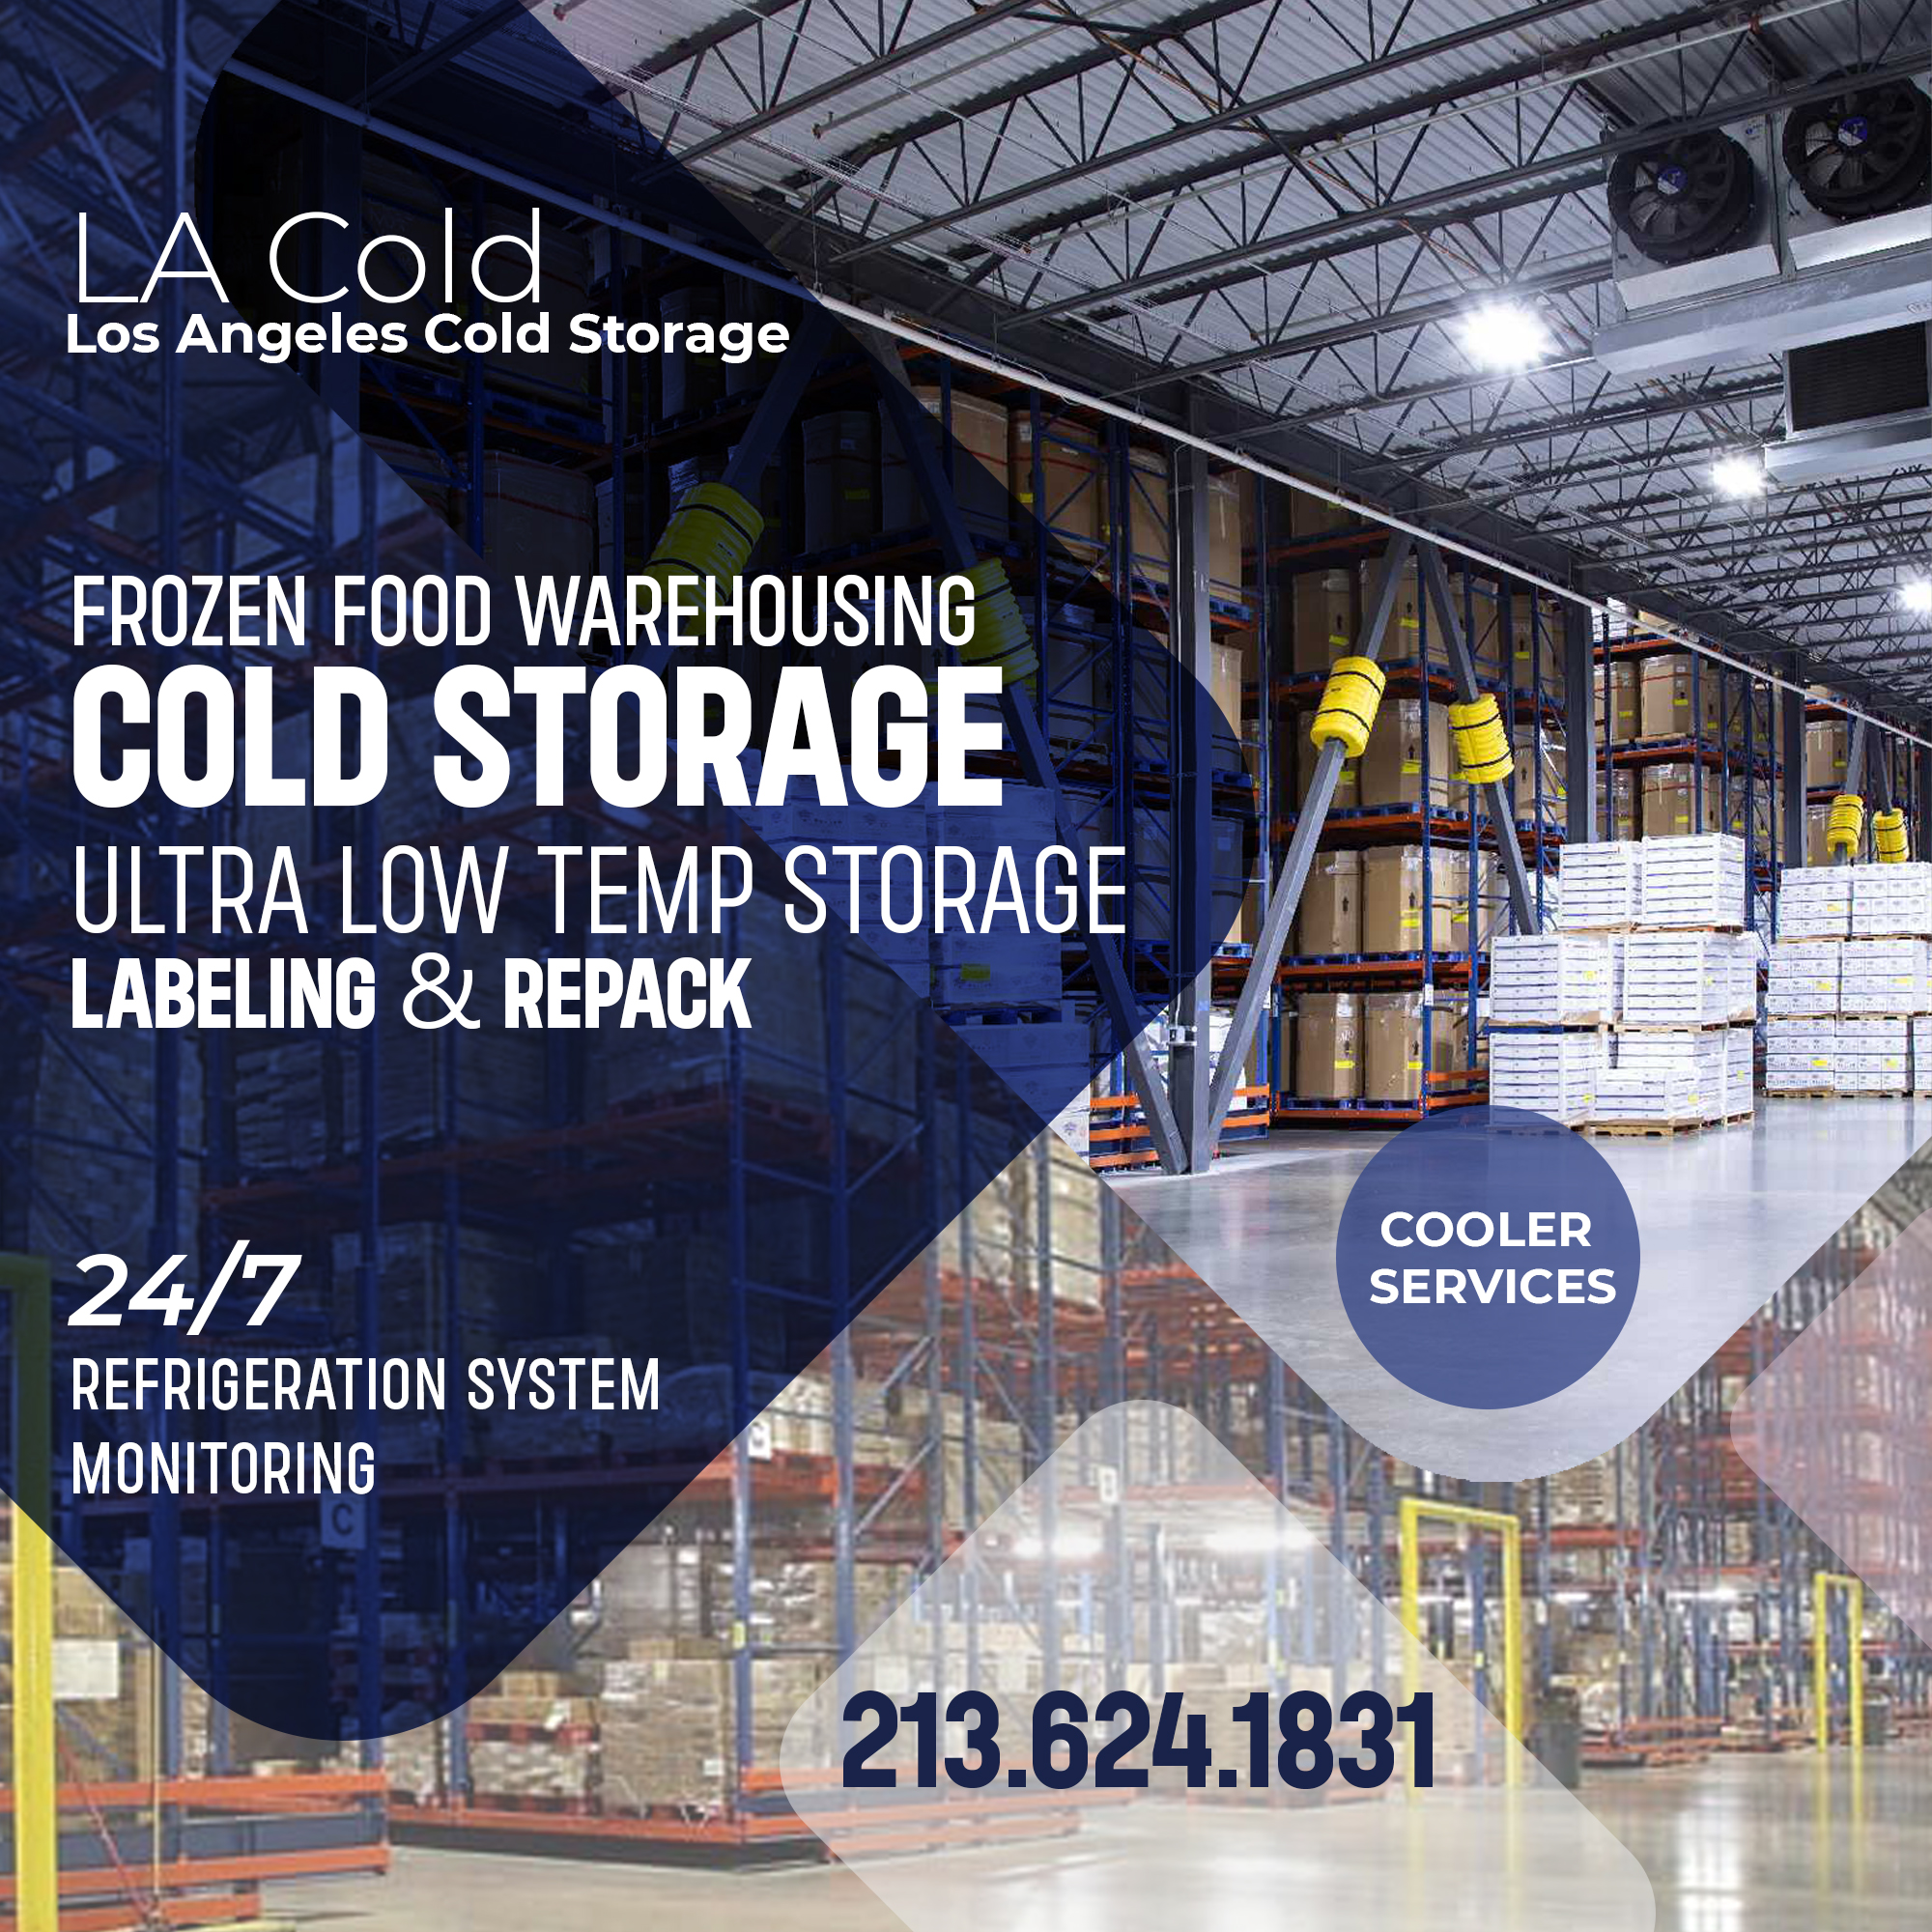 LA Cold – Los Angeles Cold Storage